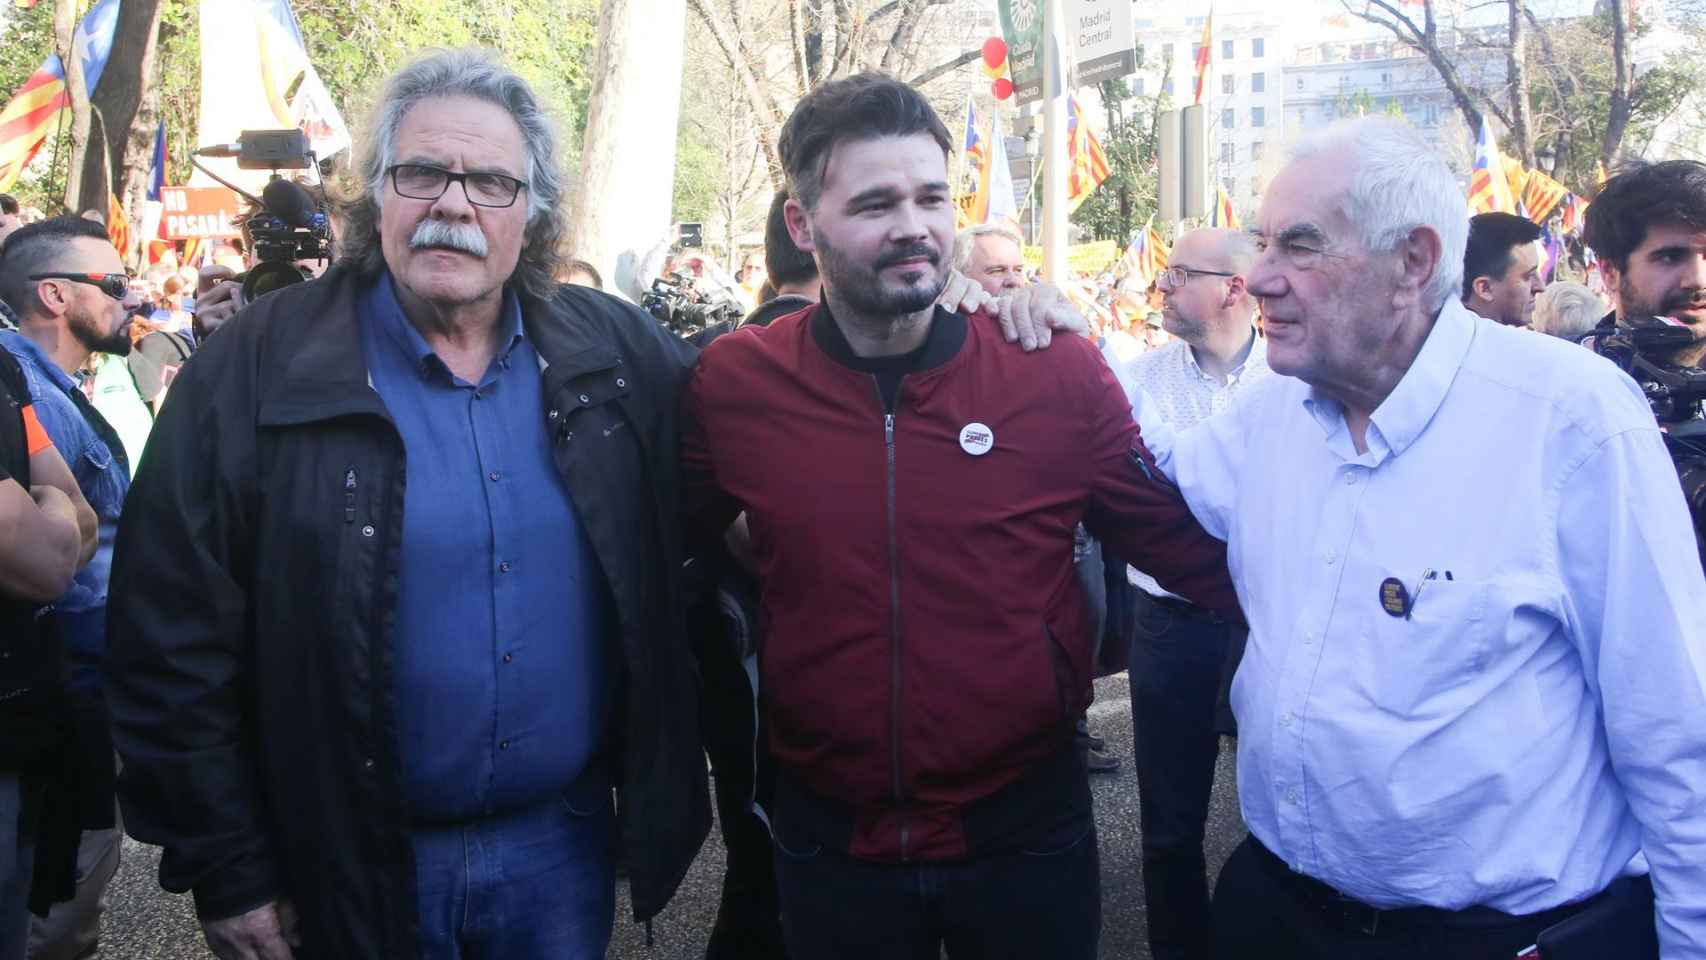 Los diputados Joan Tardà y Gabriel Rufián y Ernest Maragall, candidato de ERC al Ayuntamiento de Barcelona, en la marcha separatista de Madrid.